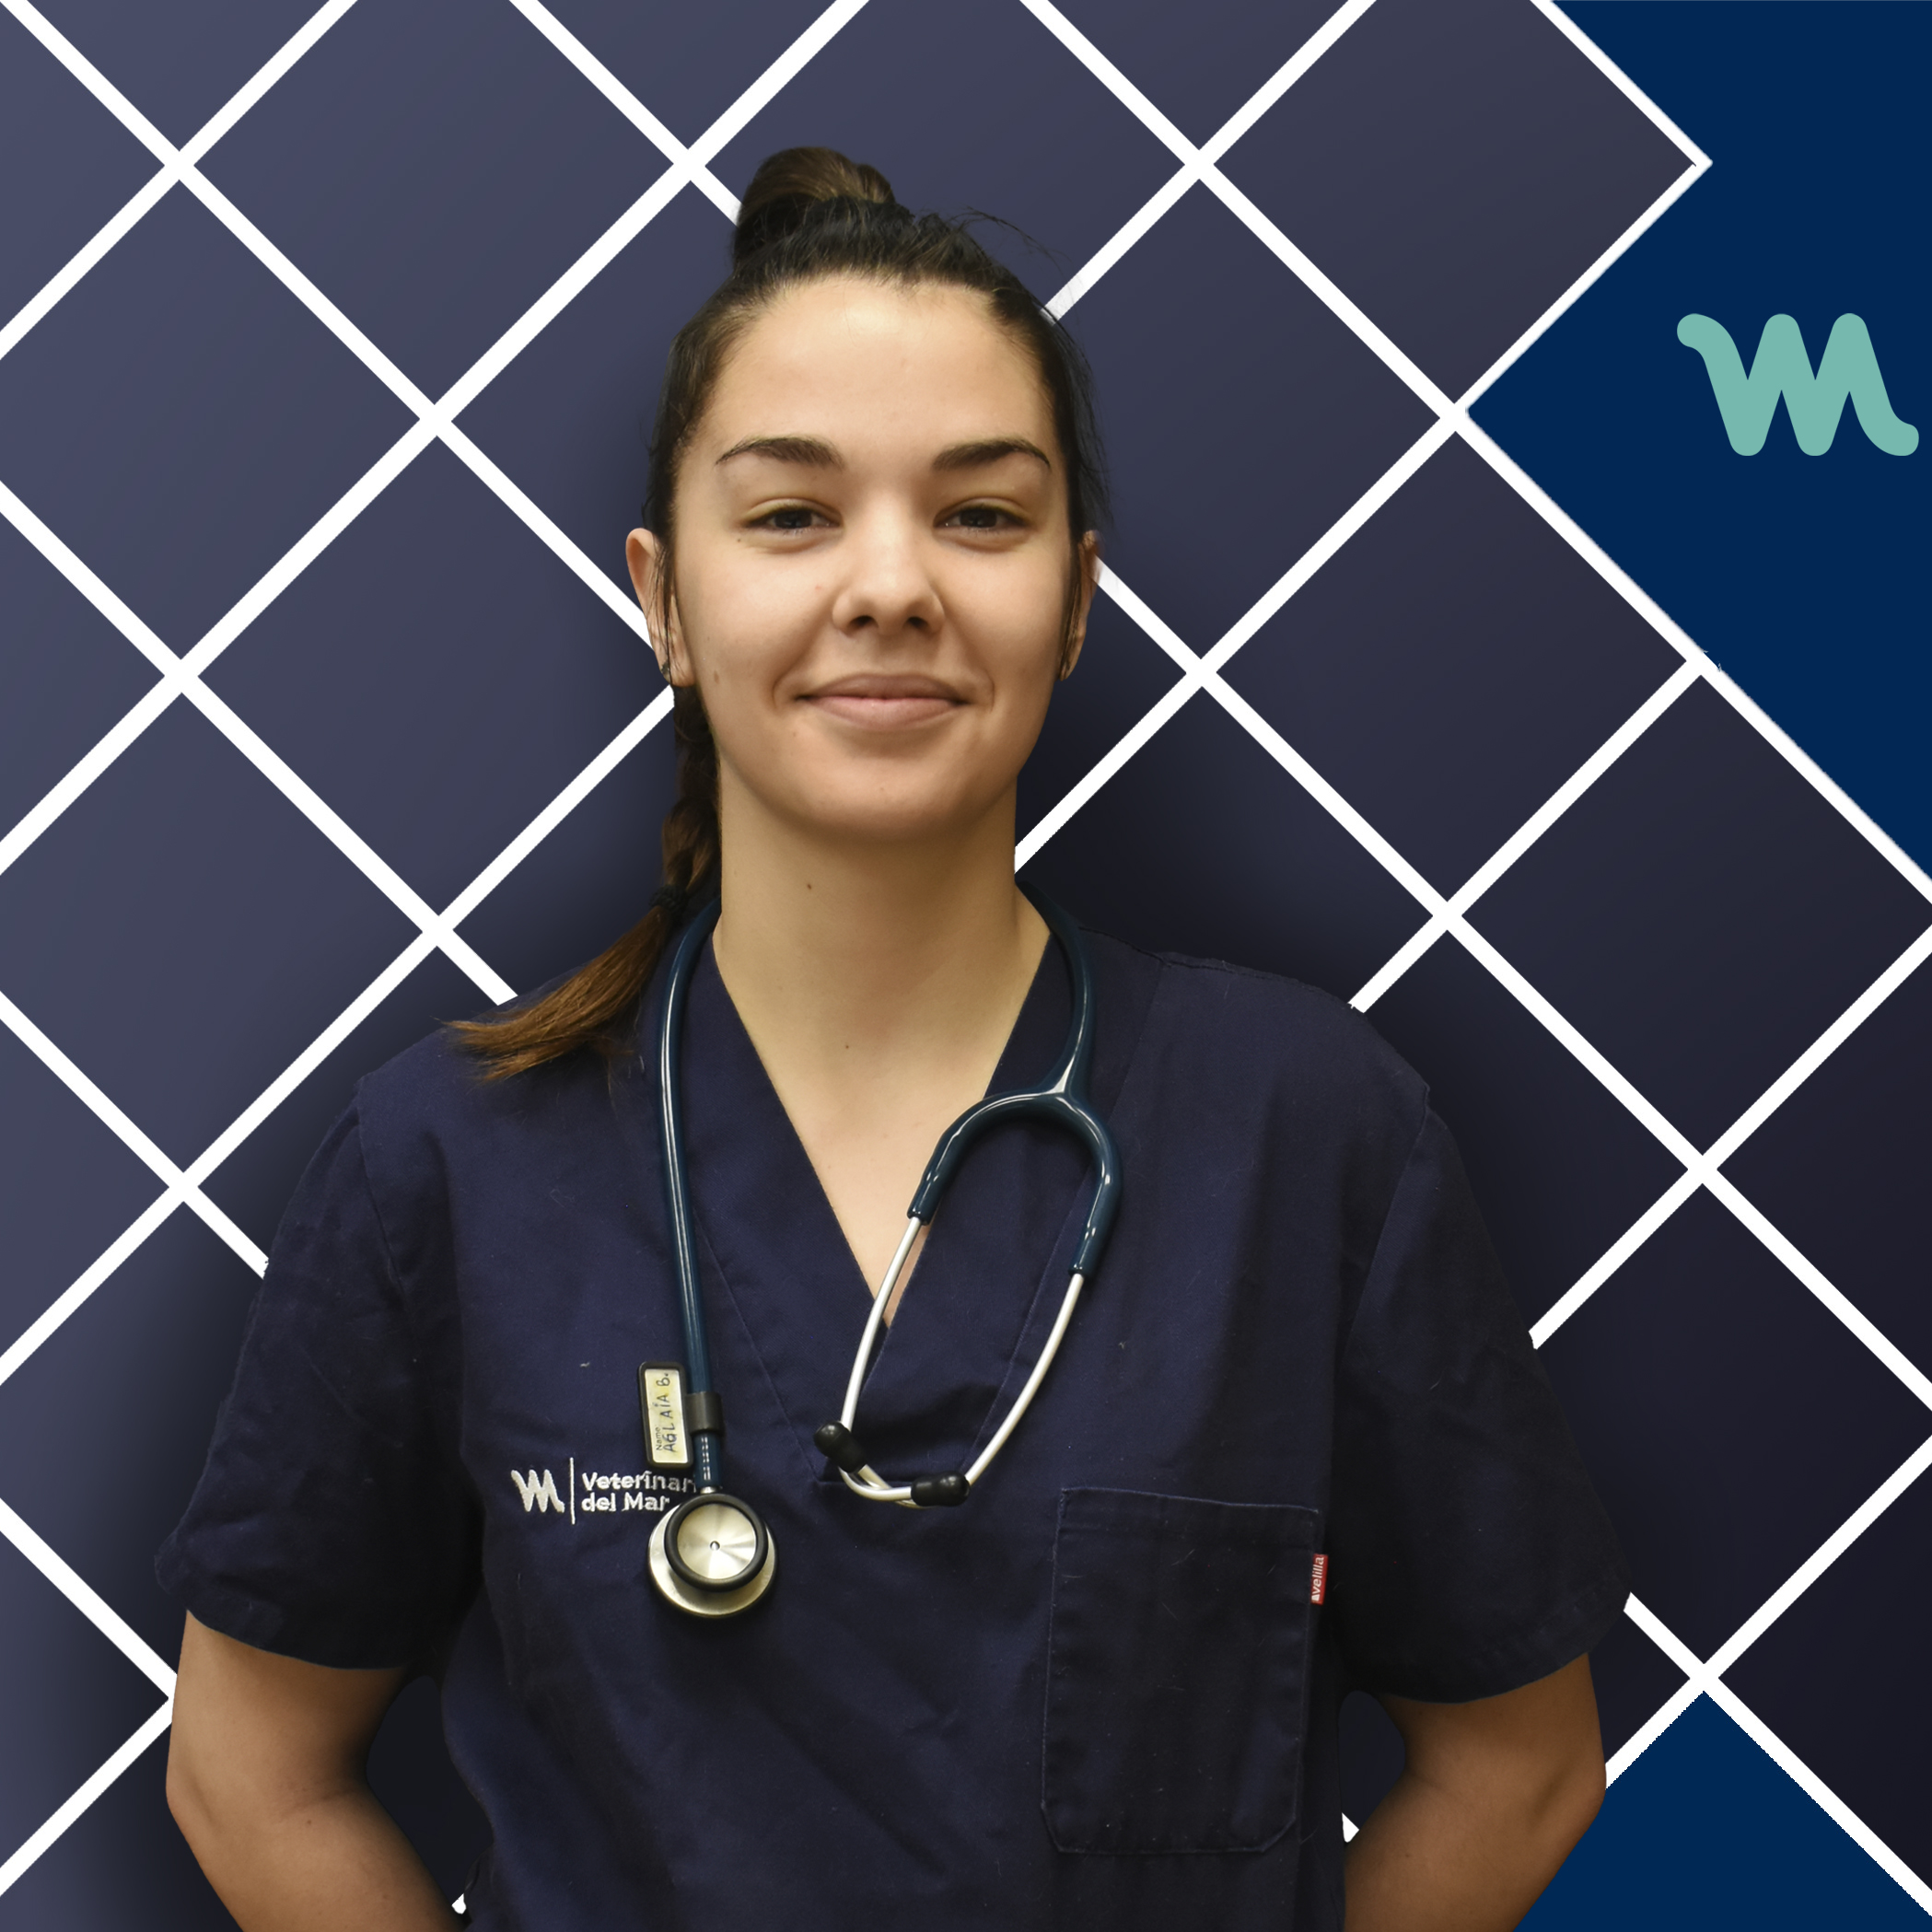 Urgencias Veterinarias | Marta Hita | Hospital Veterinario del Mar